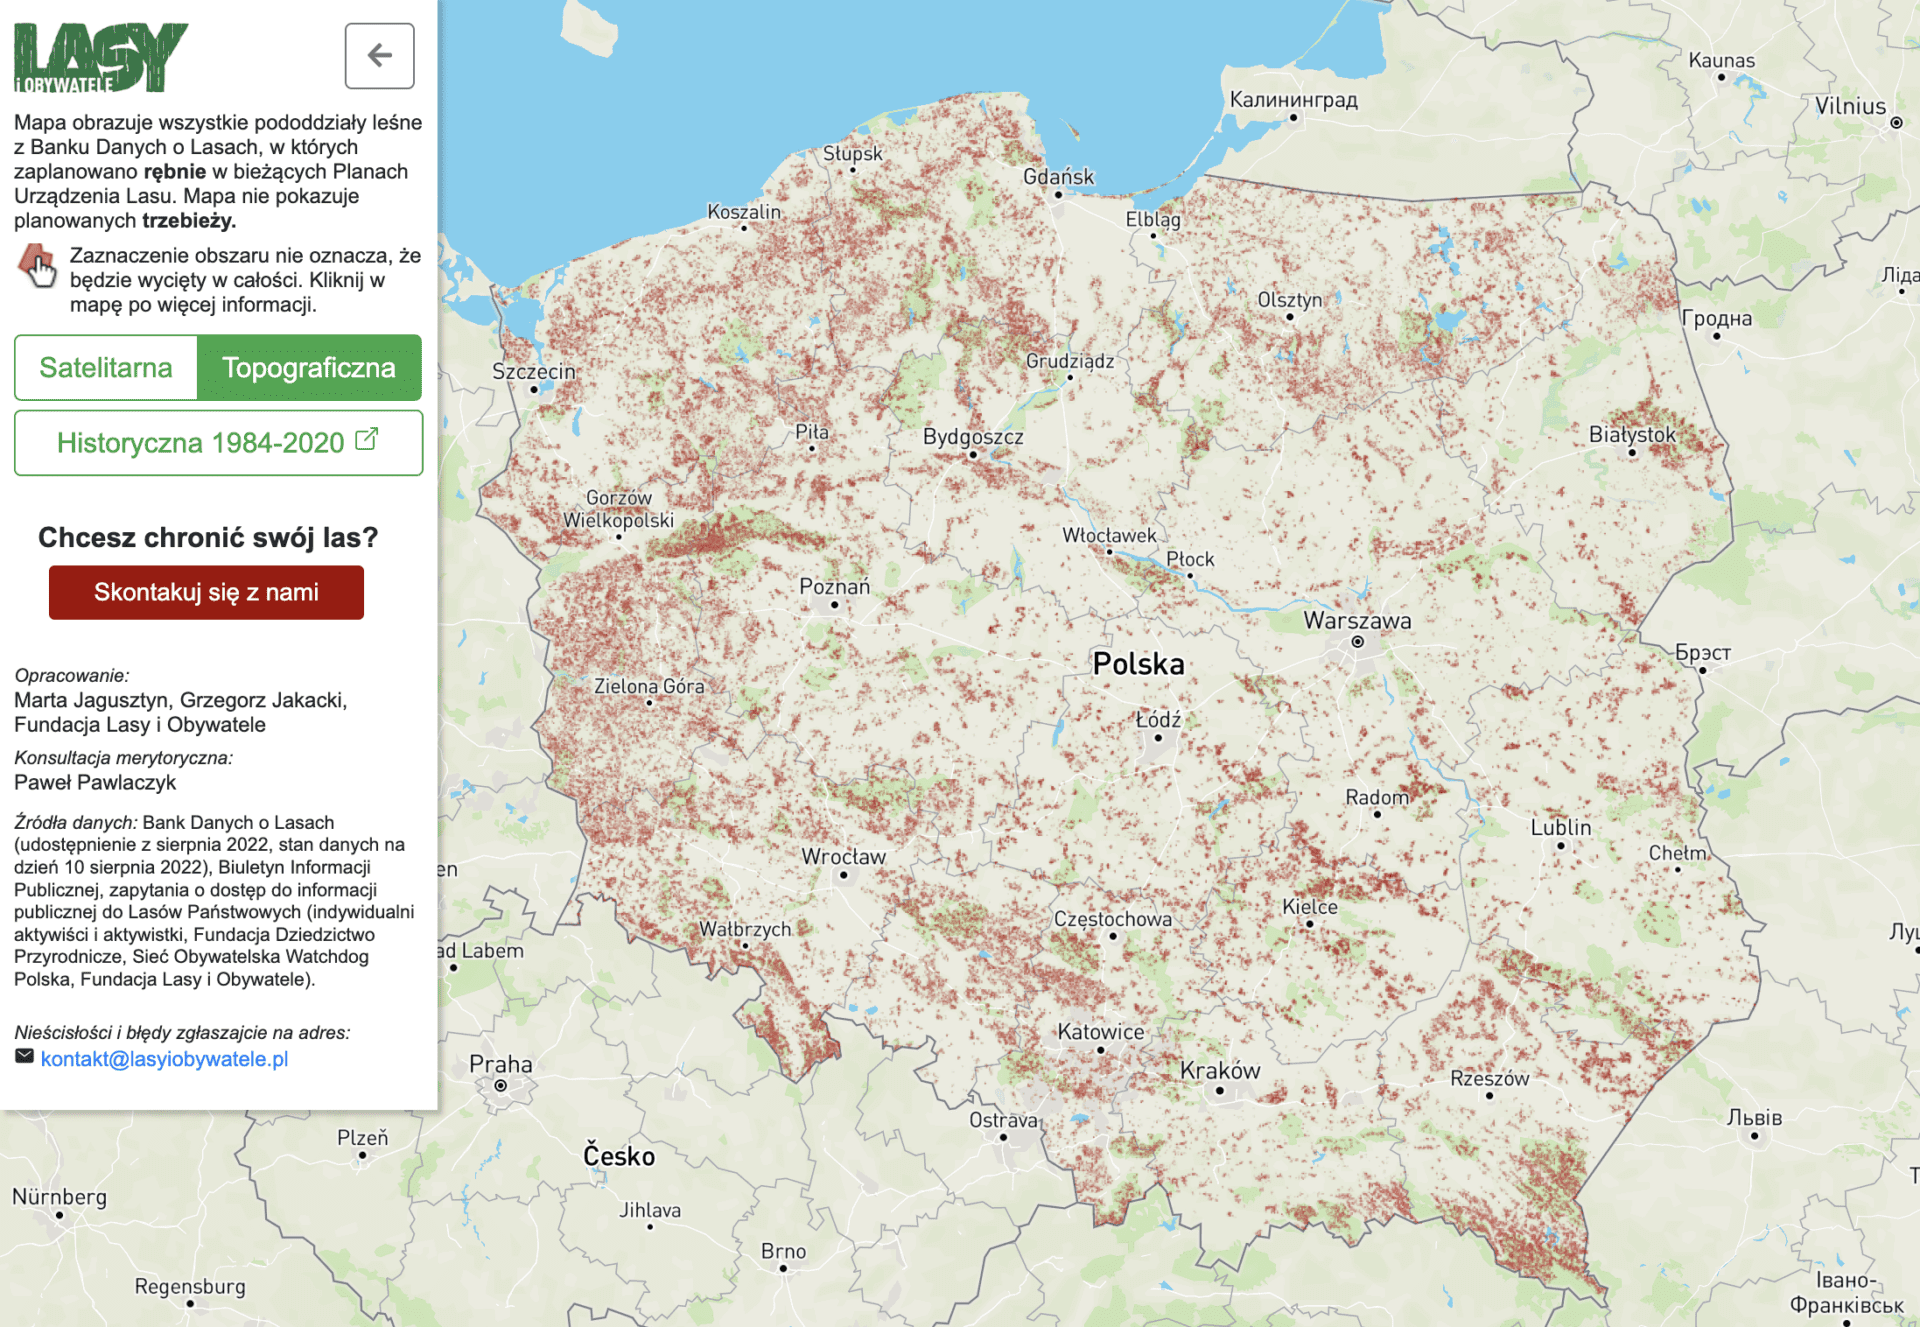 Wersja mapy inicjatywy Lasy i Obywatele z kwietnia 2023 roku. Kolorem czerwonym zaznaczono znacznie mniejszy obszar Polski